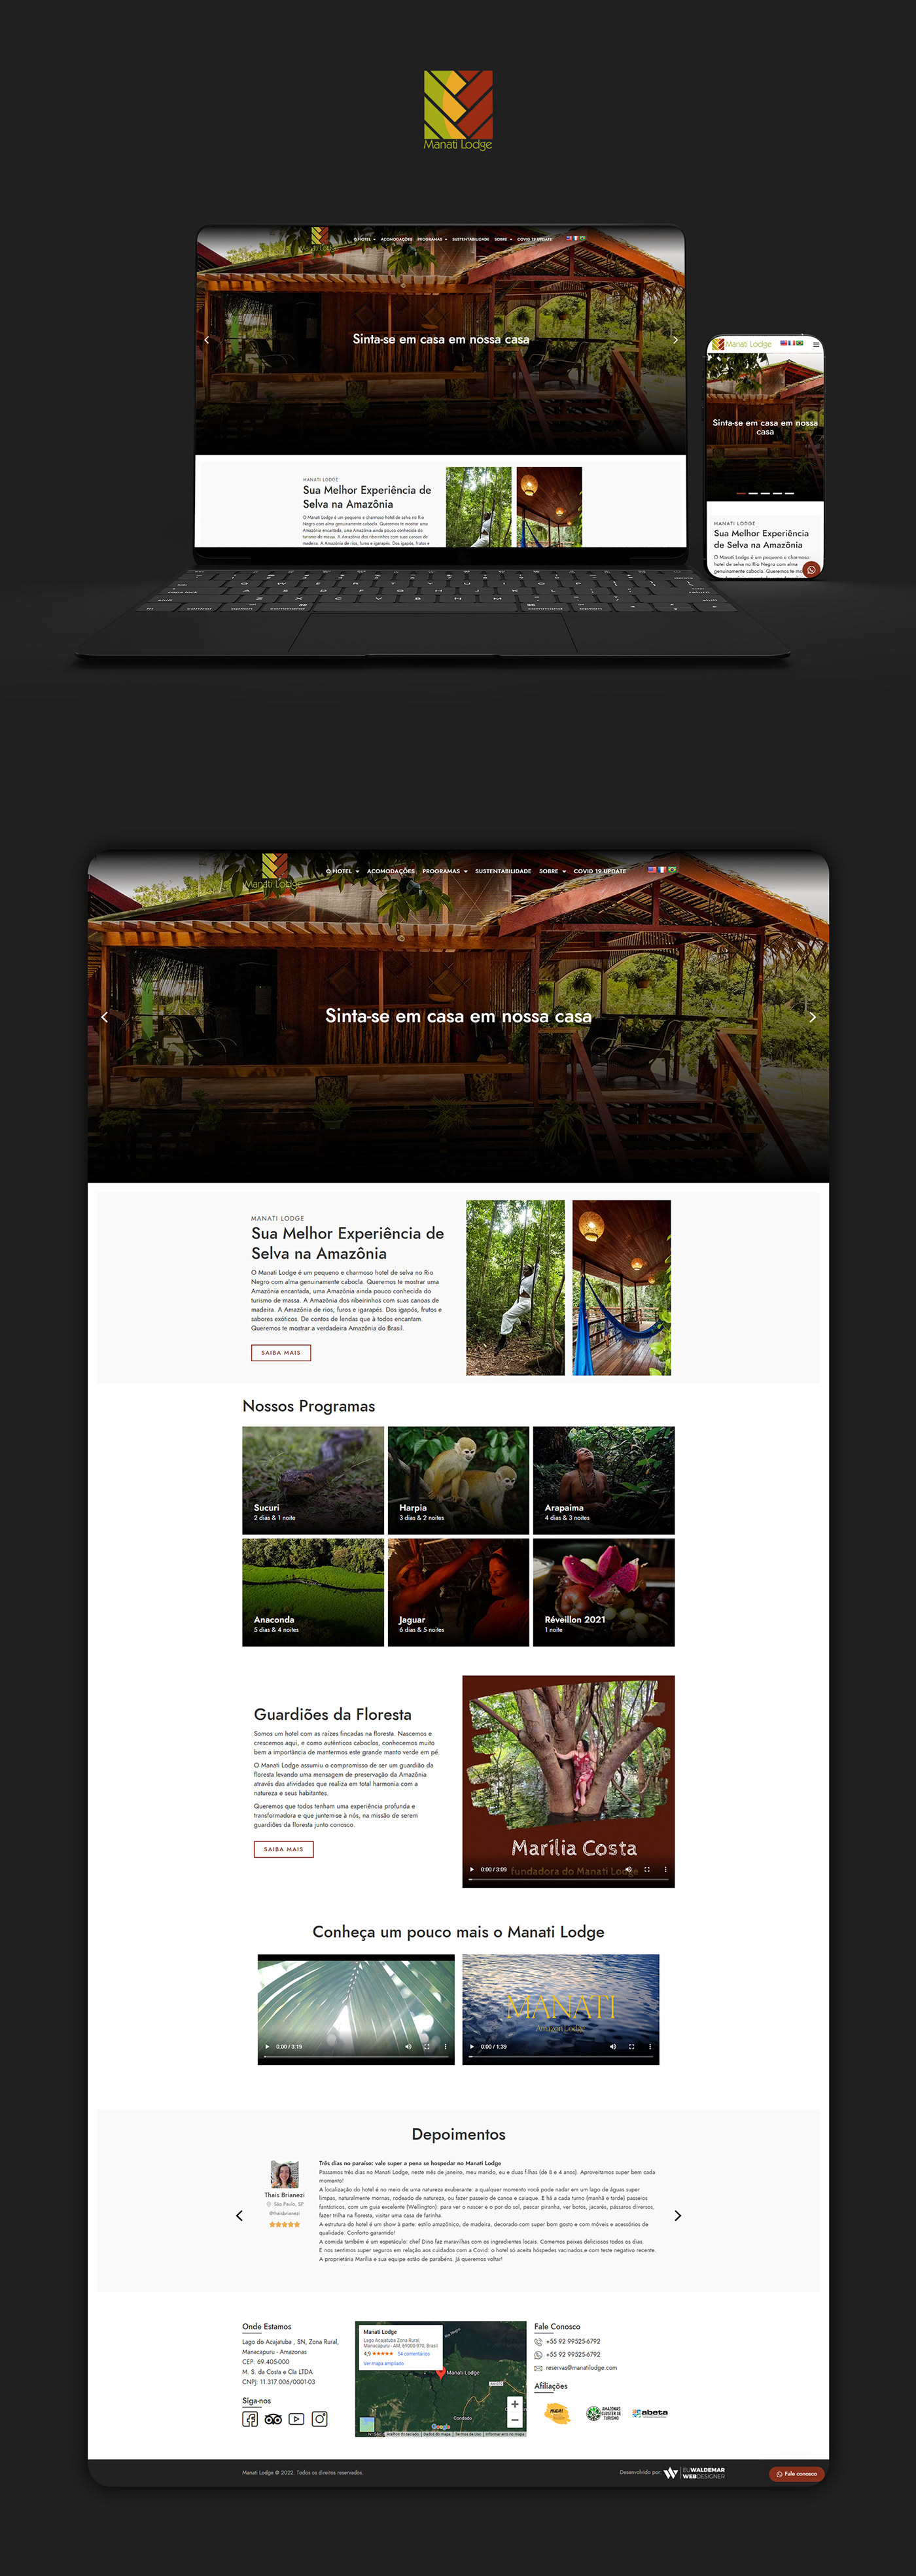 Amazon jungle lodge